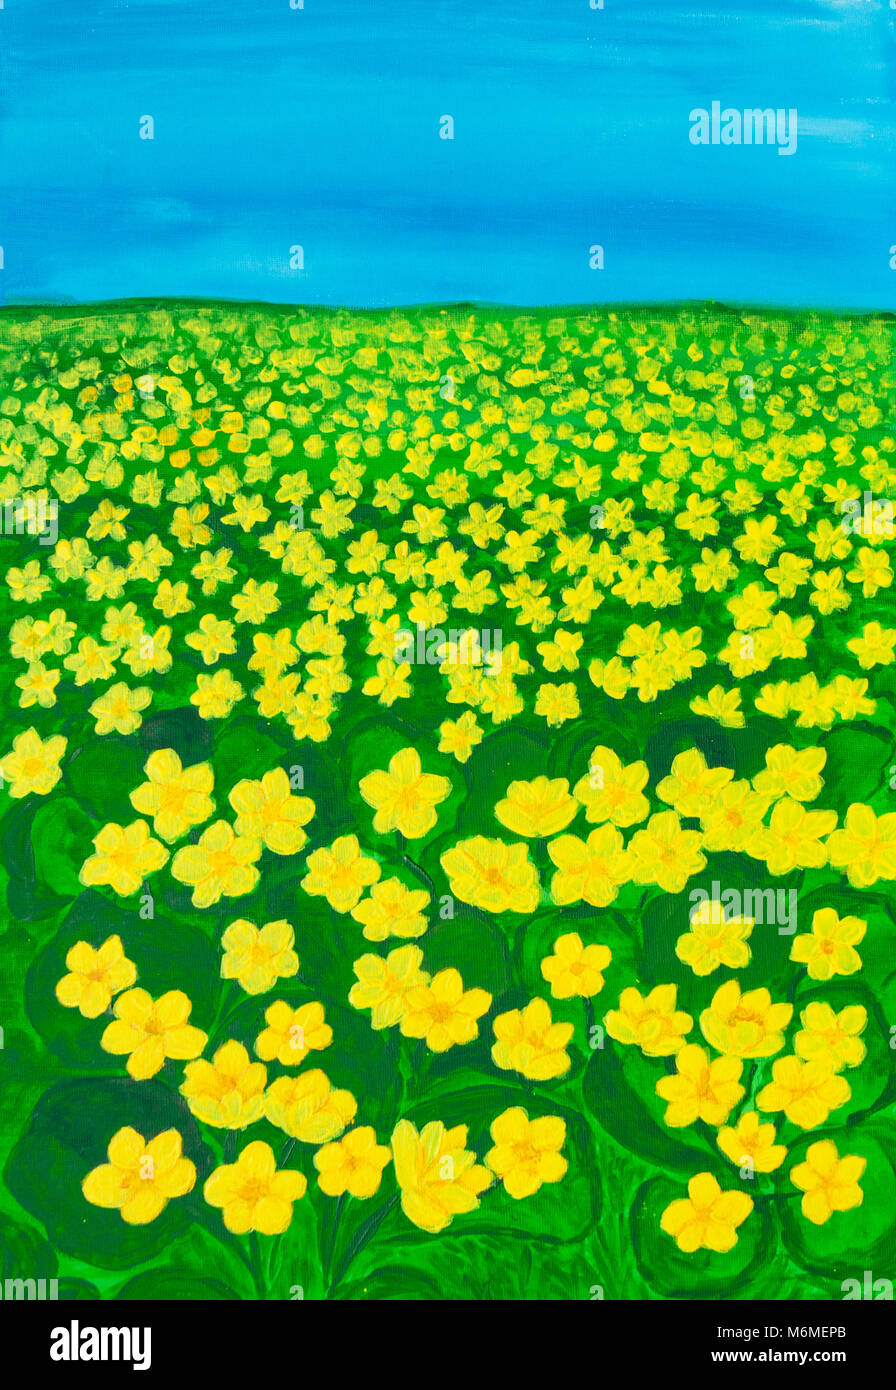 Frühling Wiese mit vielen ersten Frühling Blumen gelbe Ranunkeln, Ranunculus lateinischer Name, Illustration Malerei Acryl auf Leinwand. Stockfoto